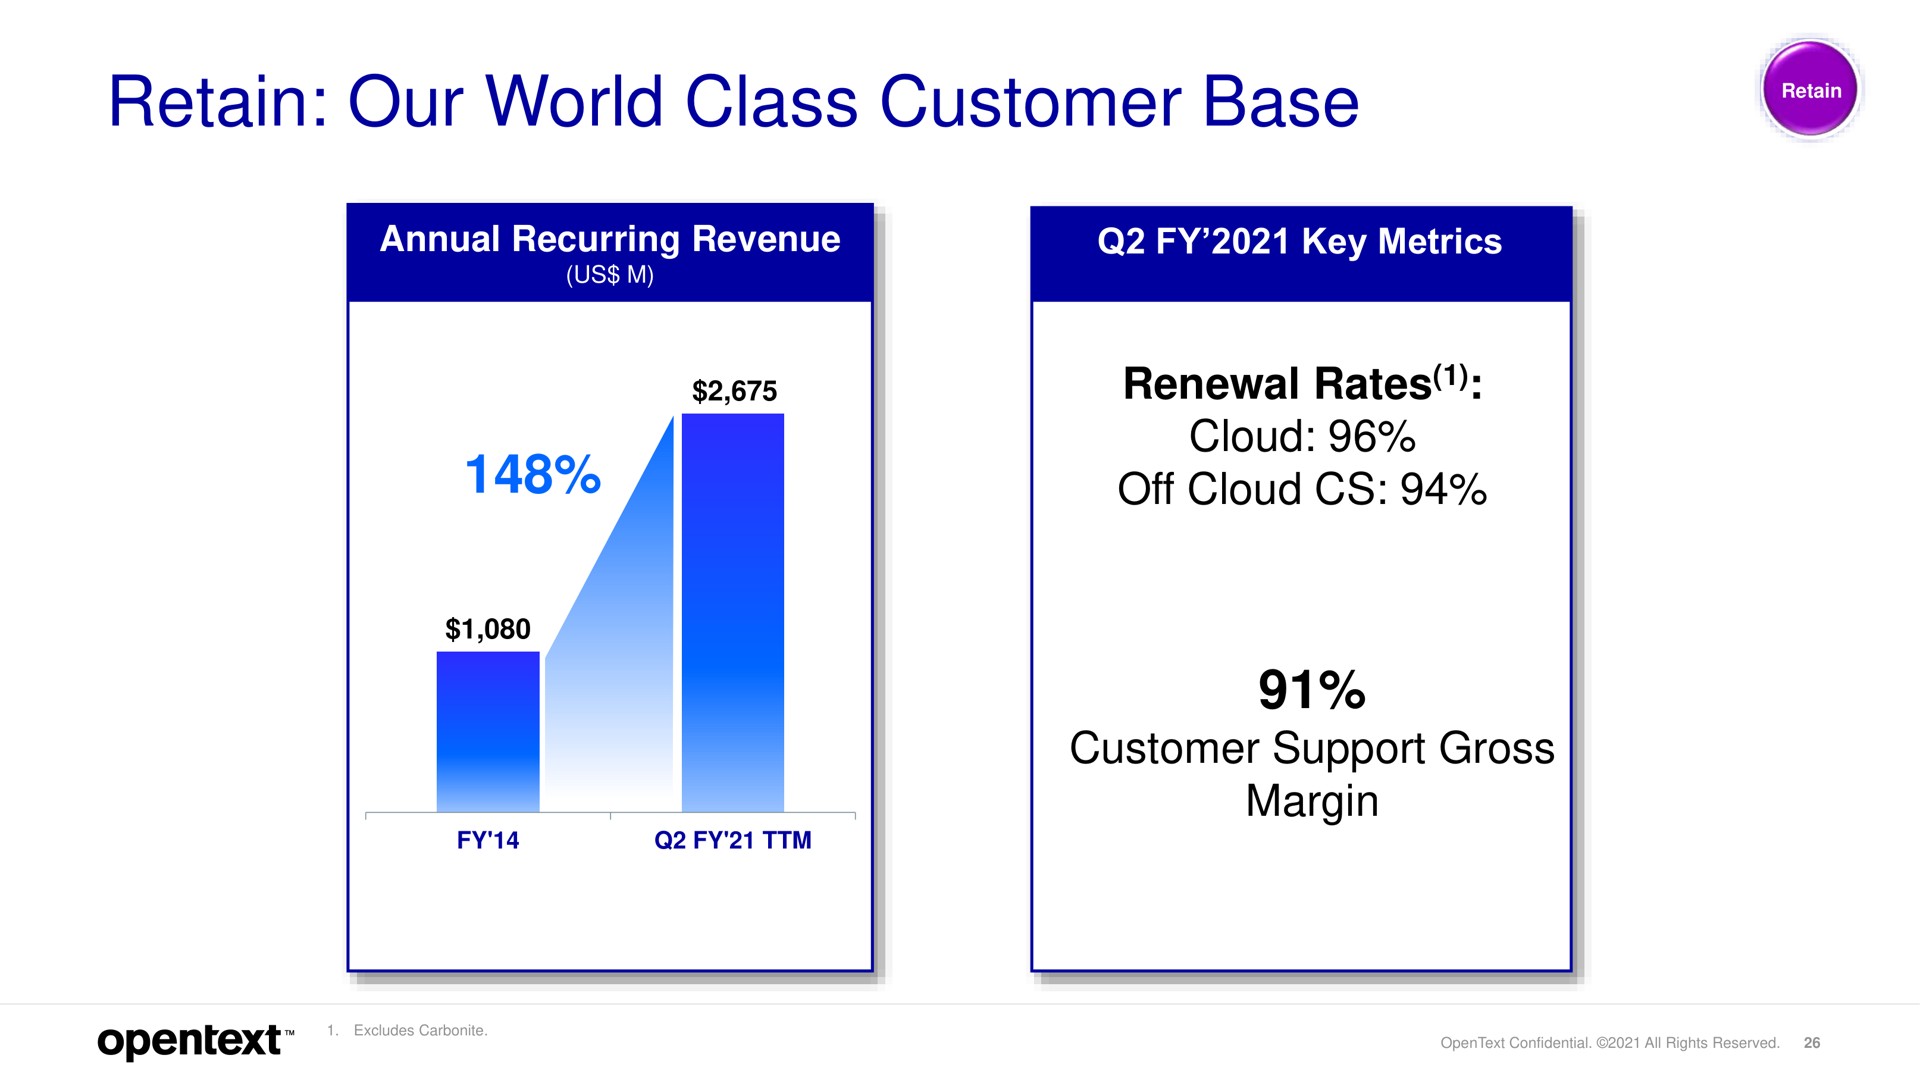 retain our world class customer base renewal rates cloud off cloud customer support gross margin | OpenText